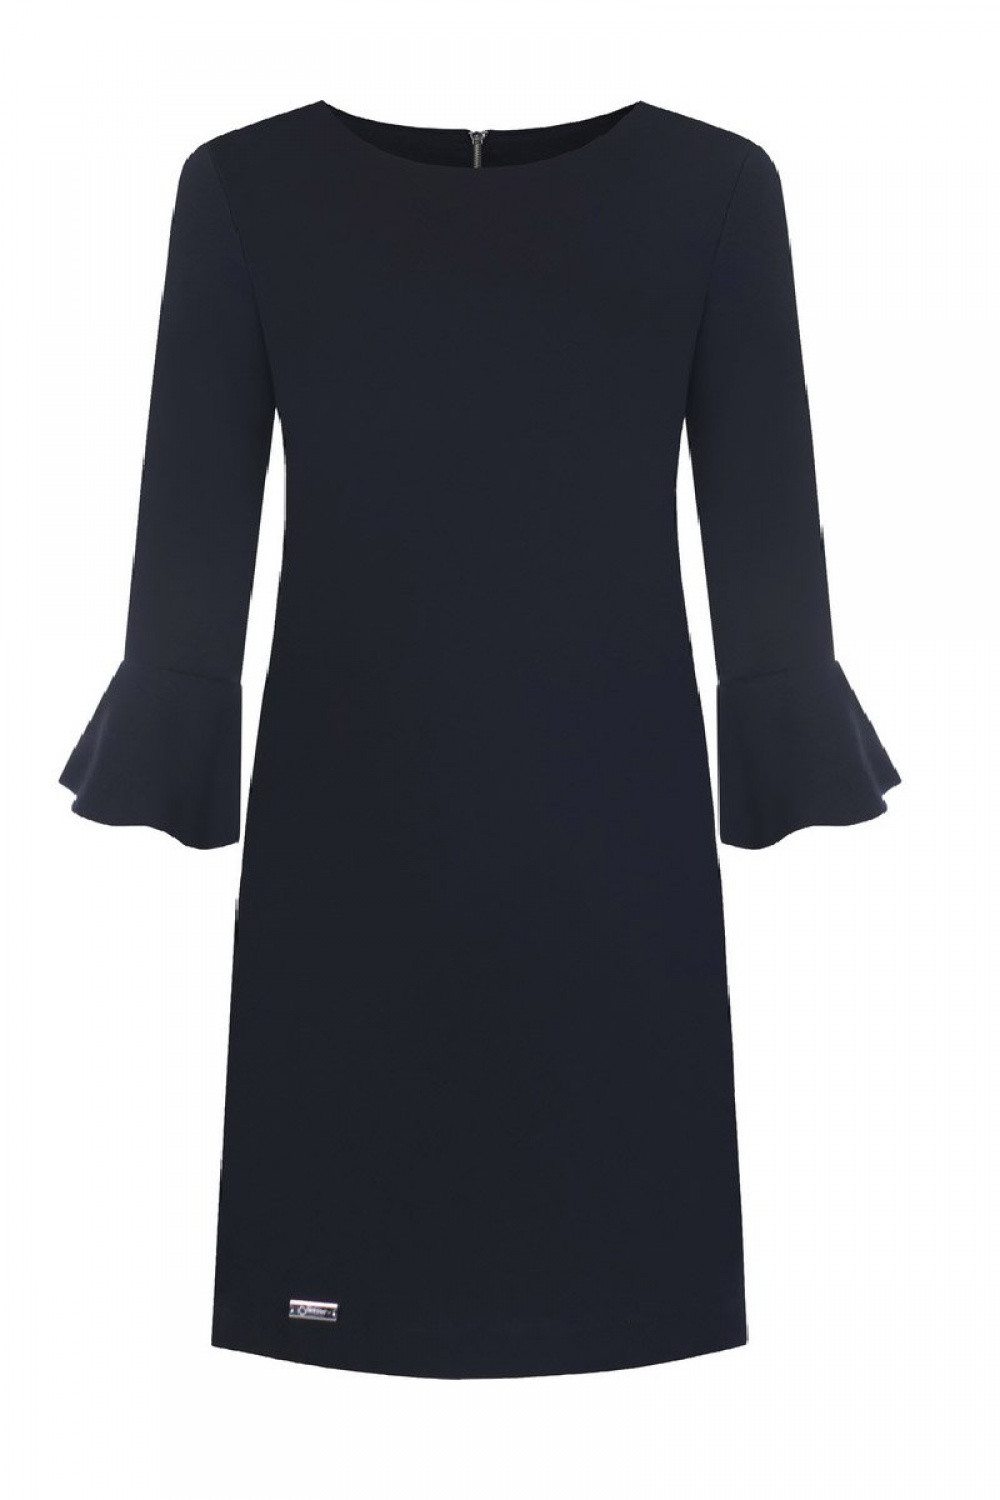 Dámské společenské šaty Erin model 108527 Černá - Jersa černá 52